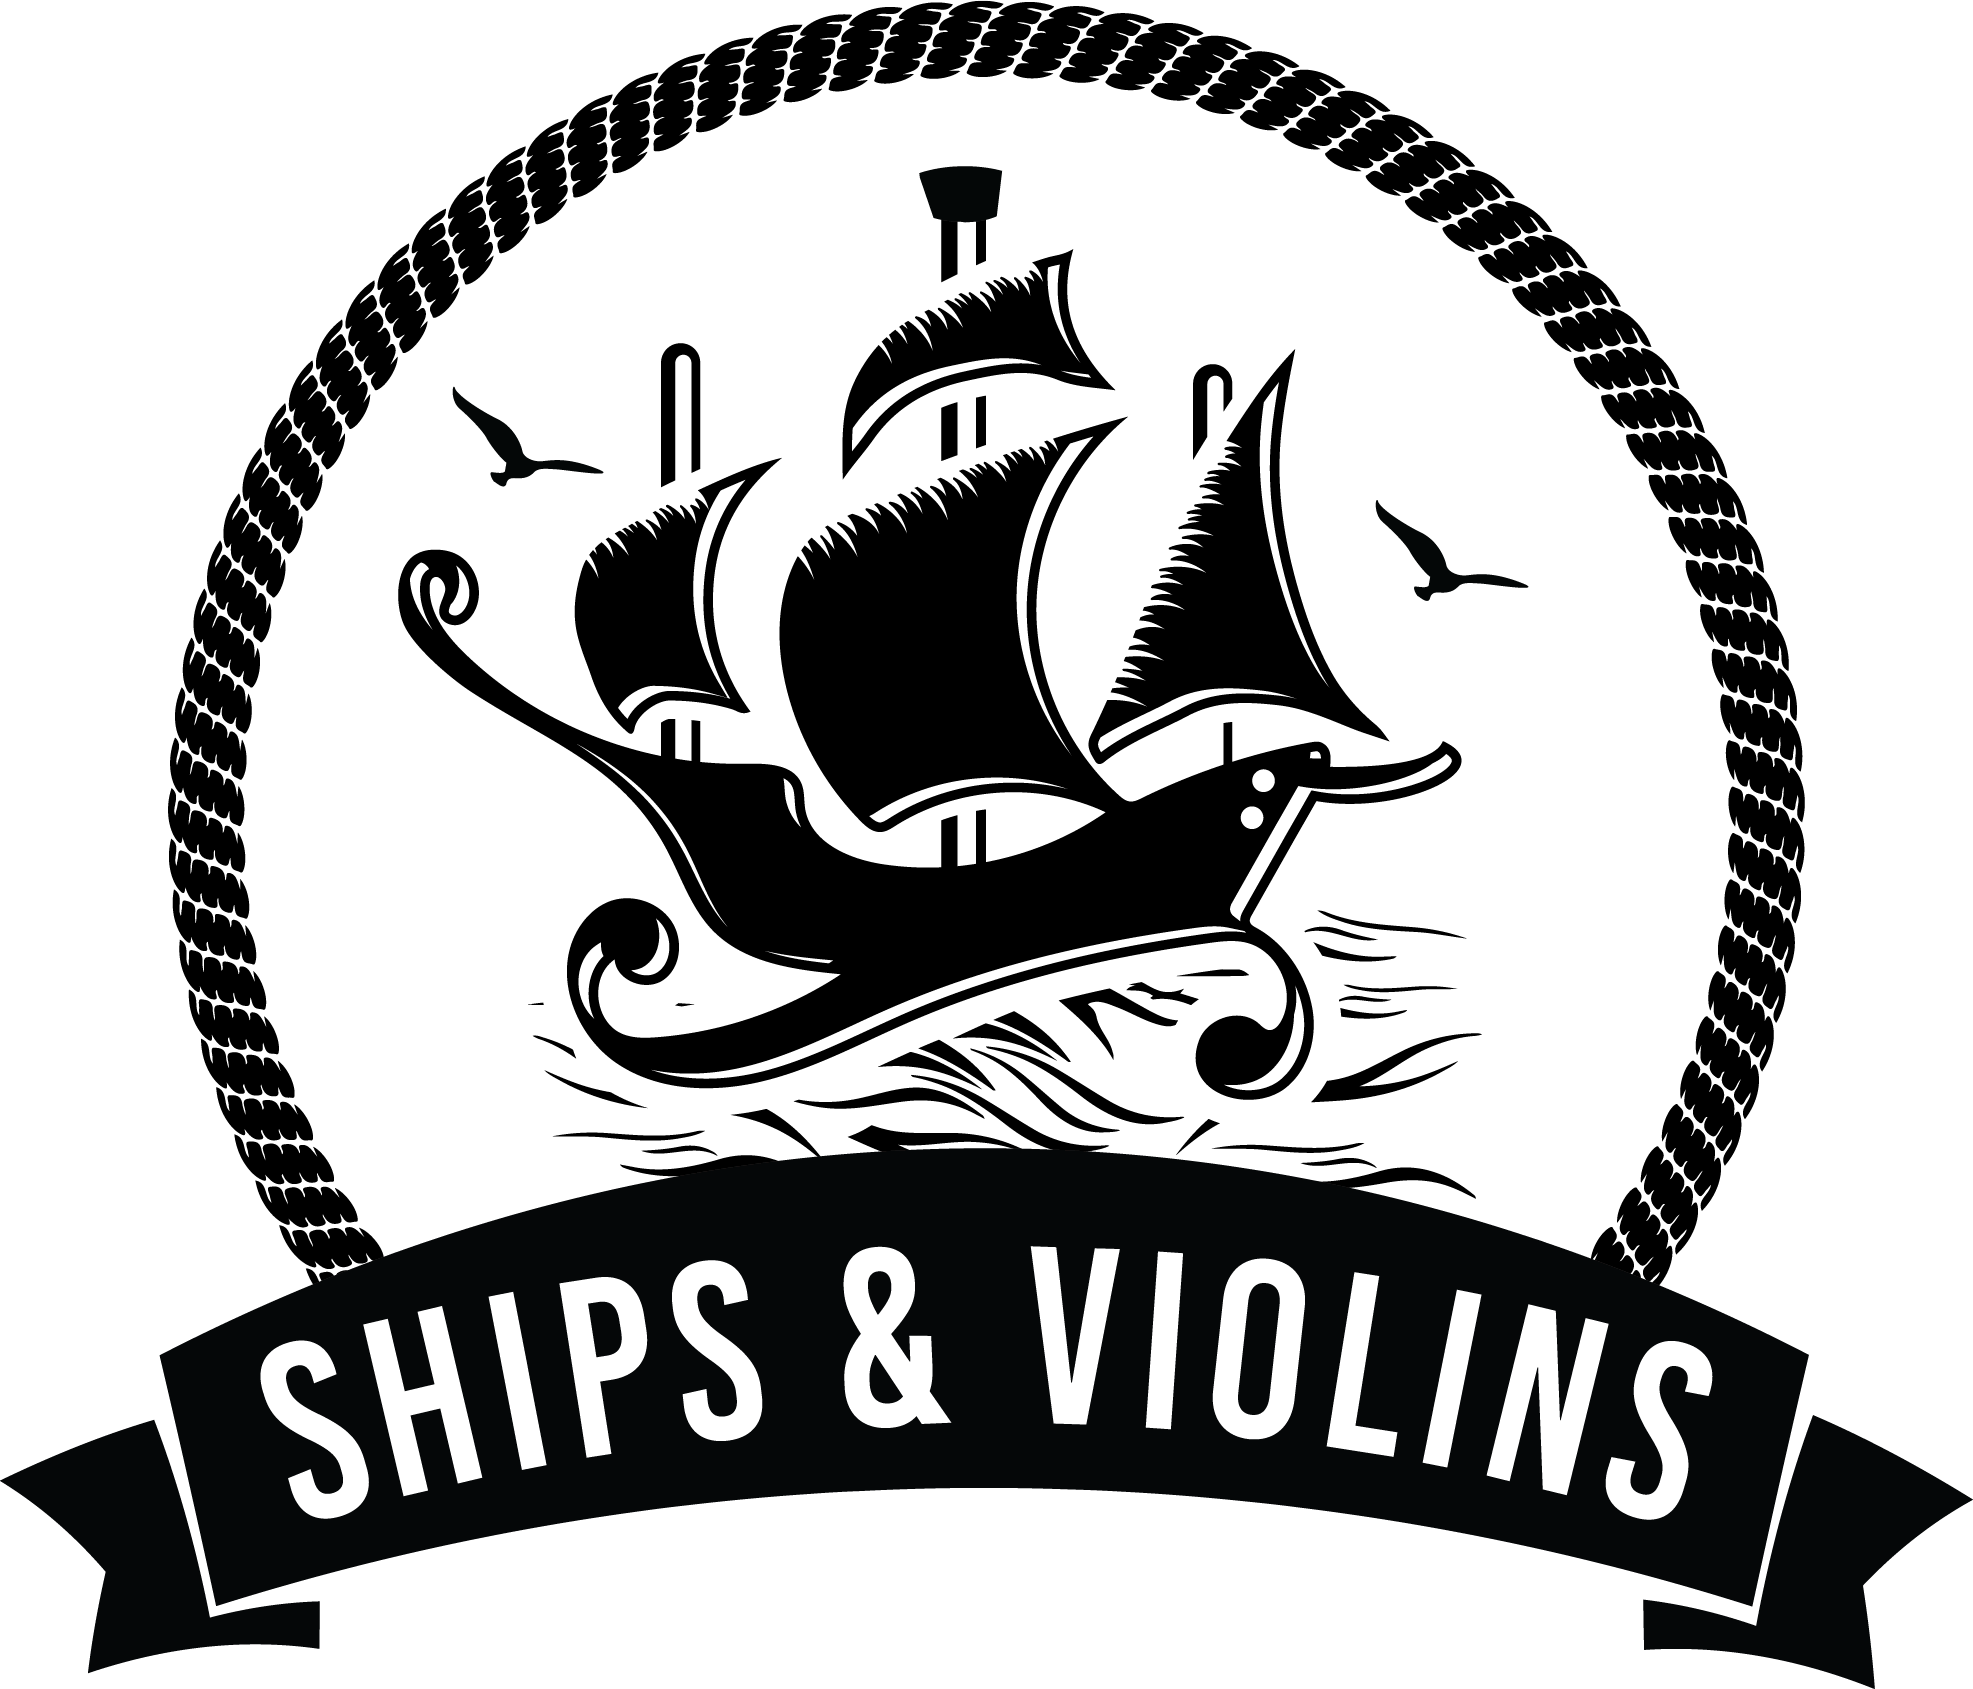 Ships & Violins